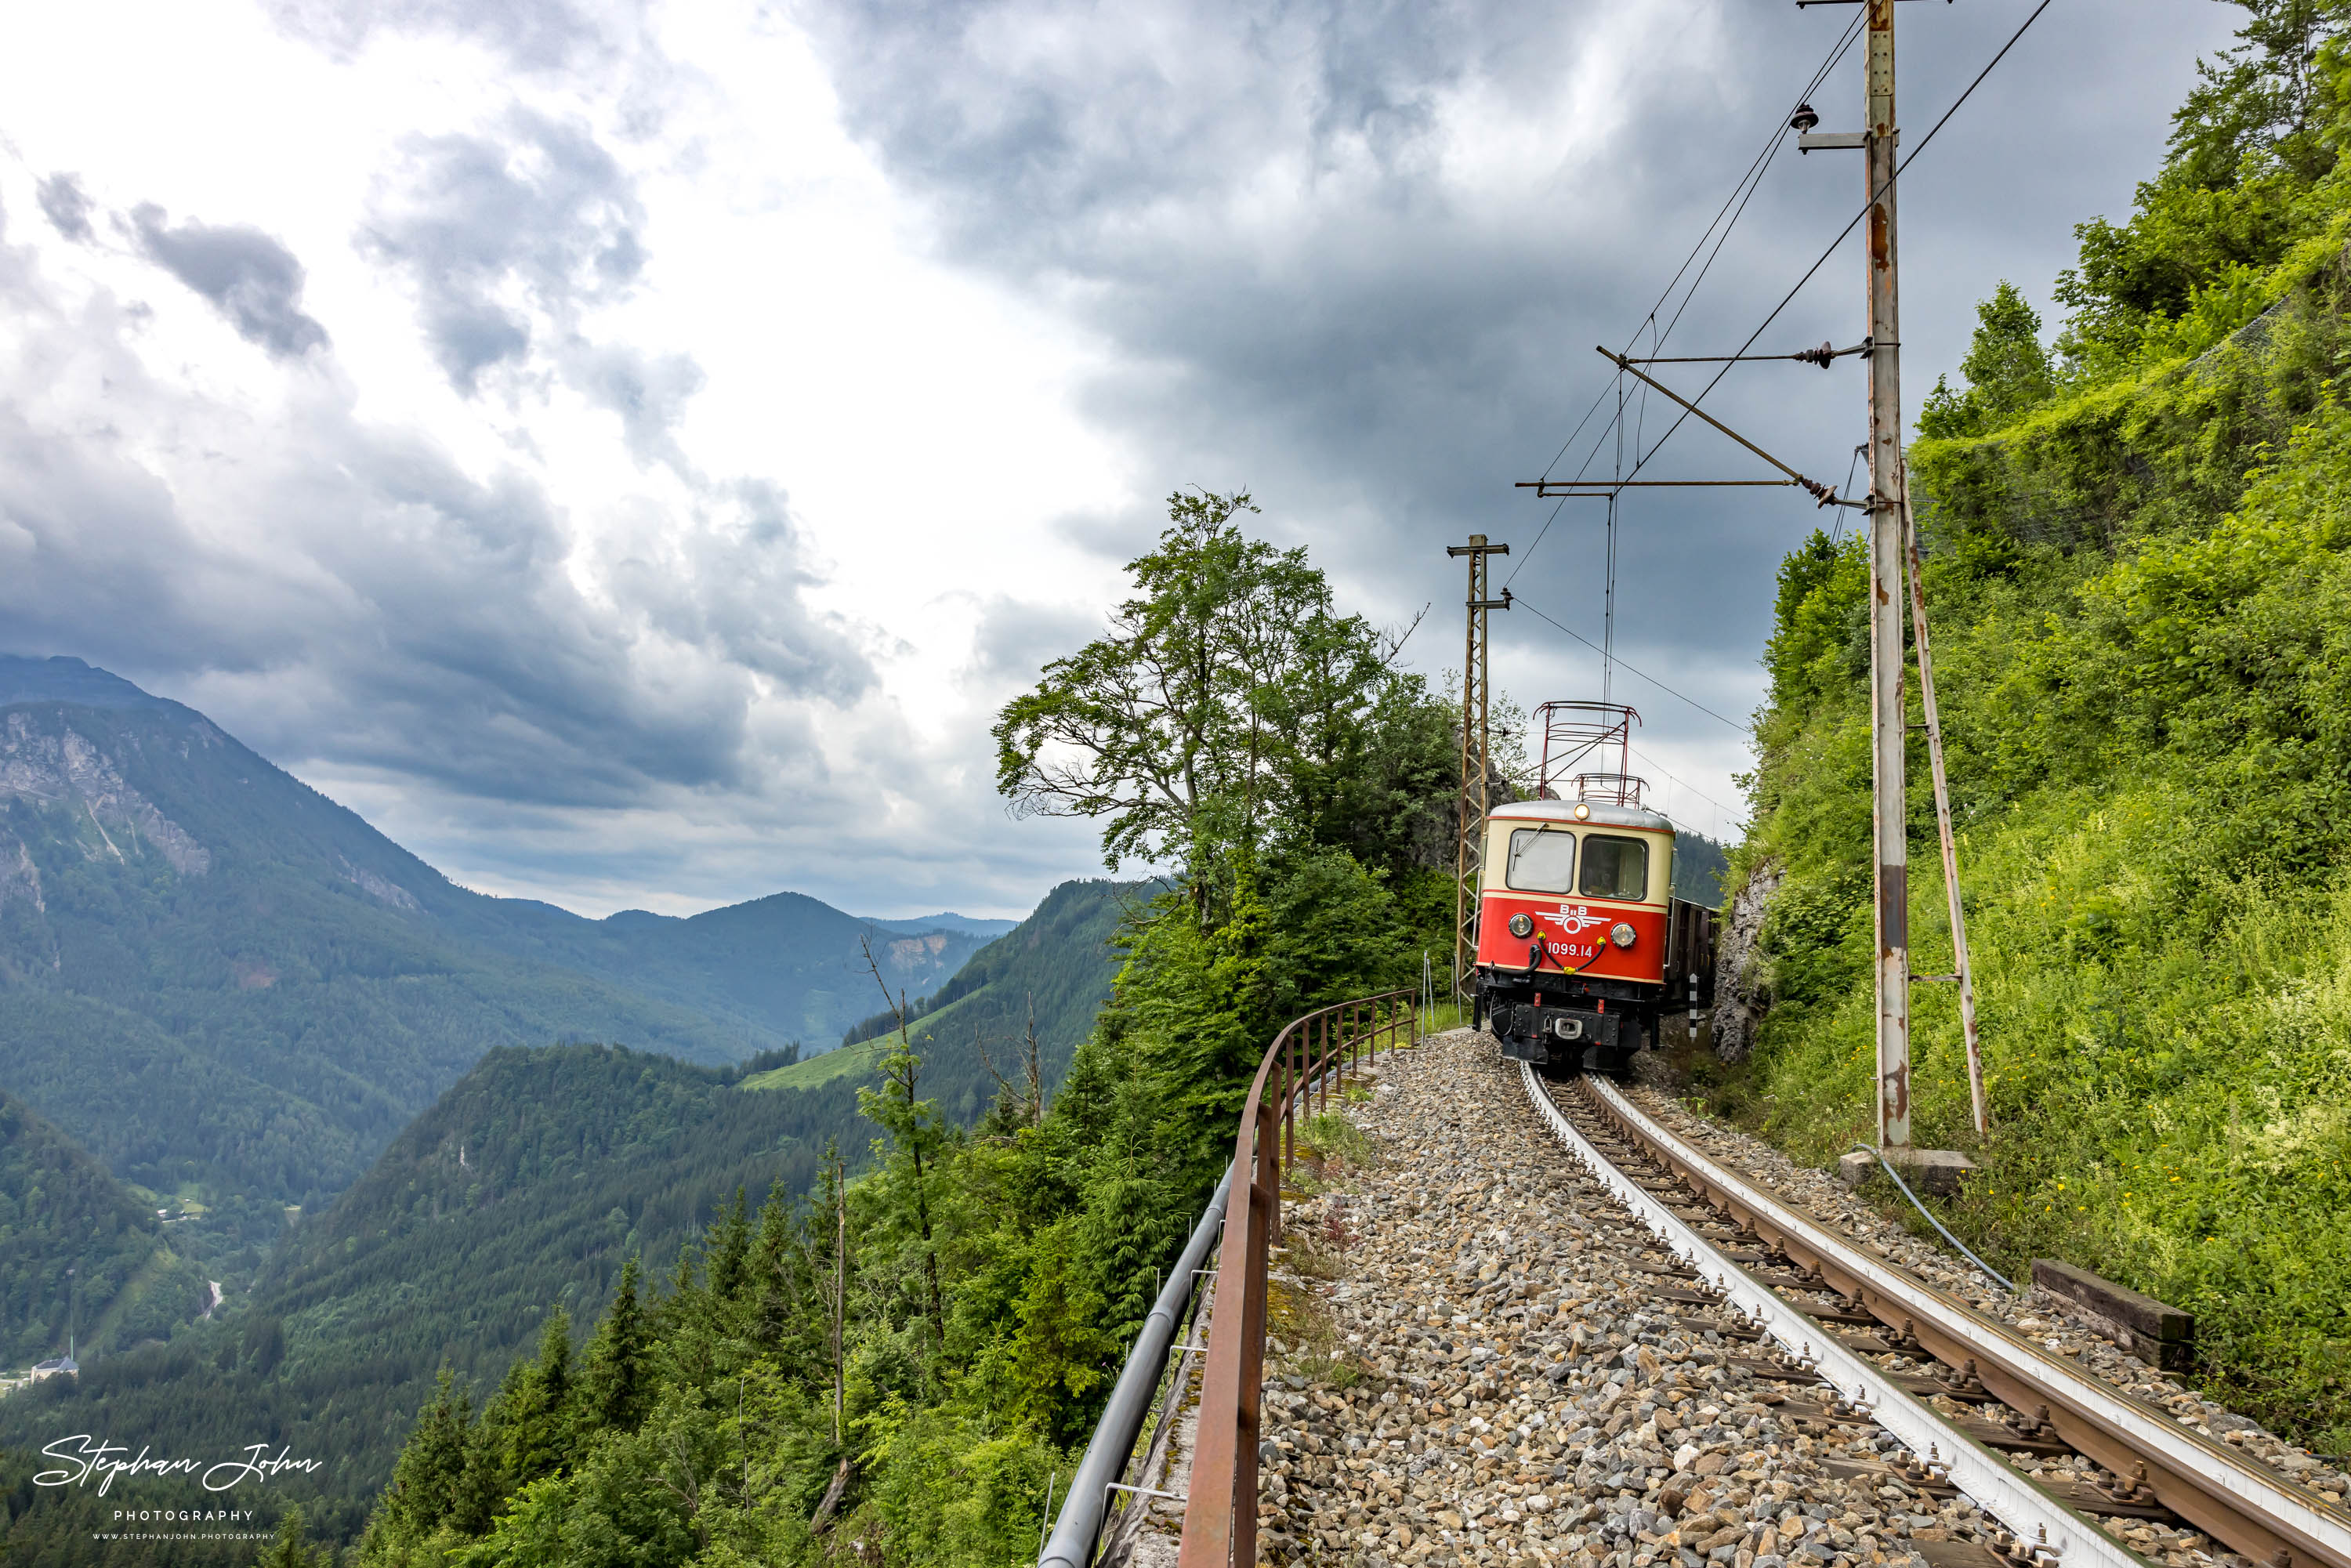 Zug 80963 mit Lok 1099.14 und 1099.11 nach Mariazell nach dem Bahnhof Gösing